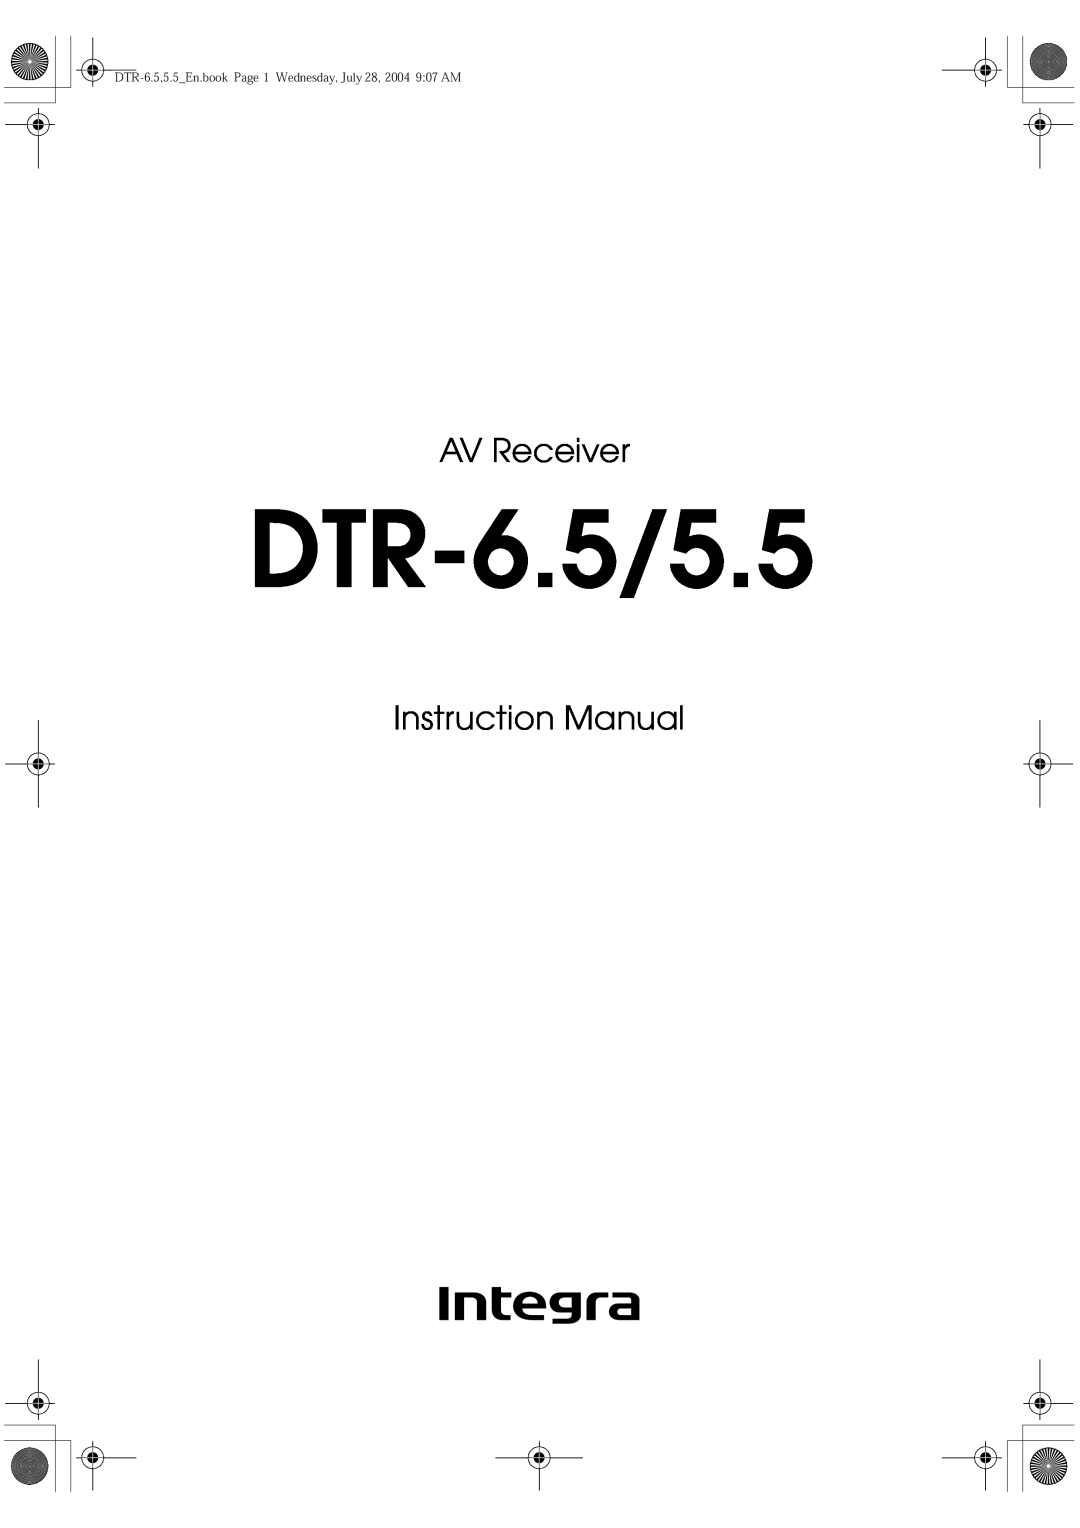 Integra DTR-5.5 instruction manual DTR-6.5/5.5, AV Receiver 